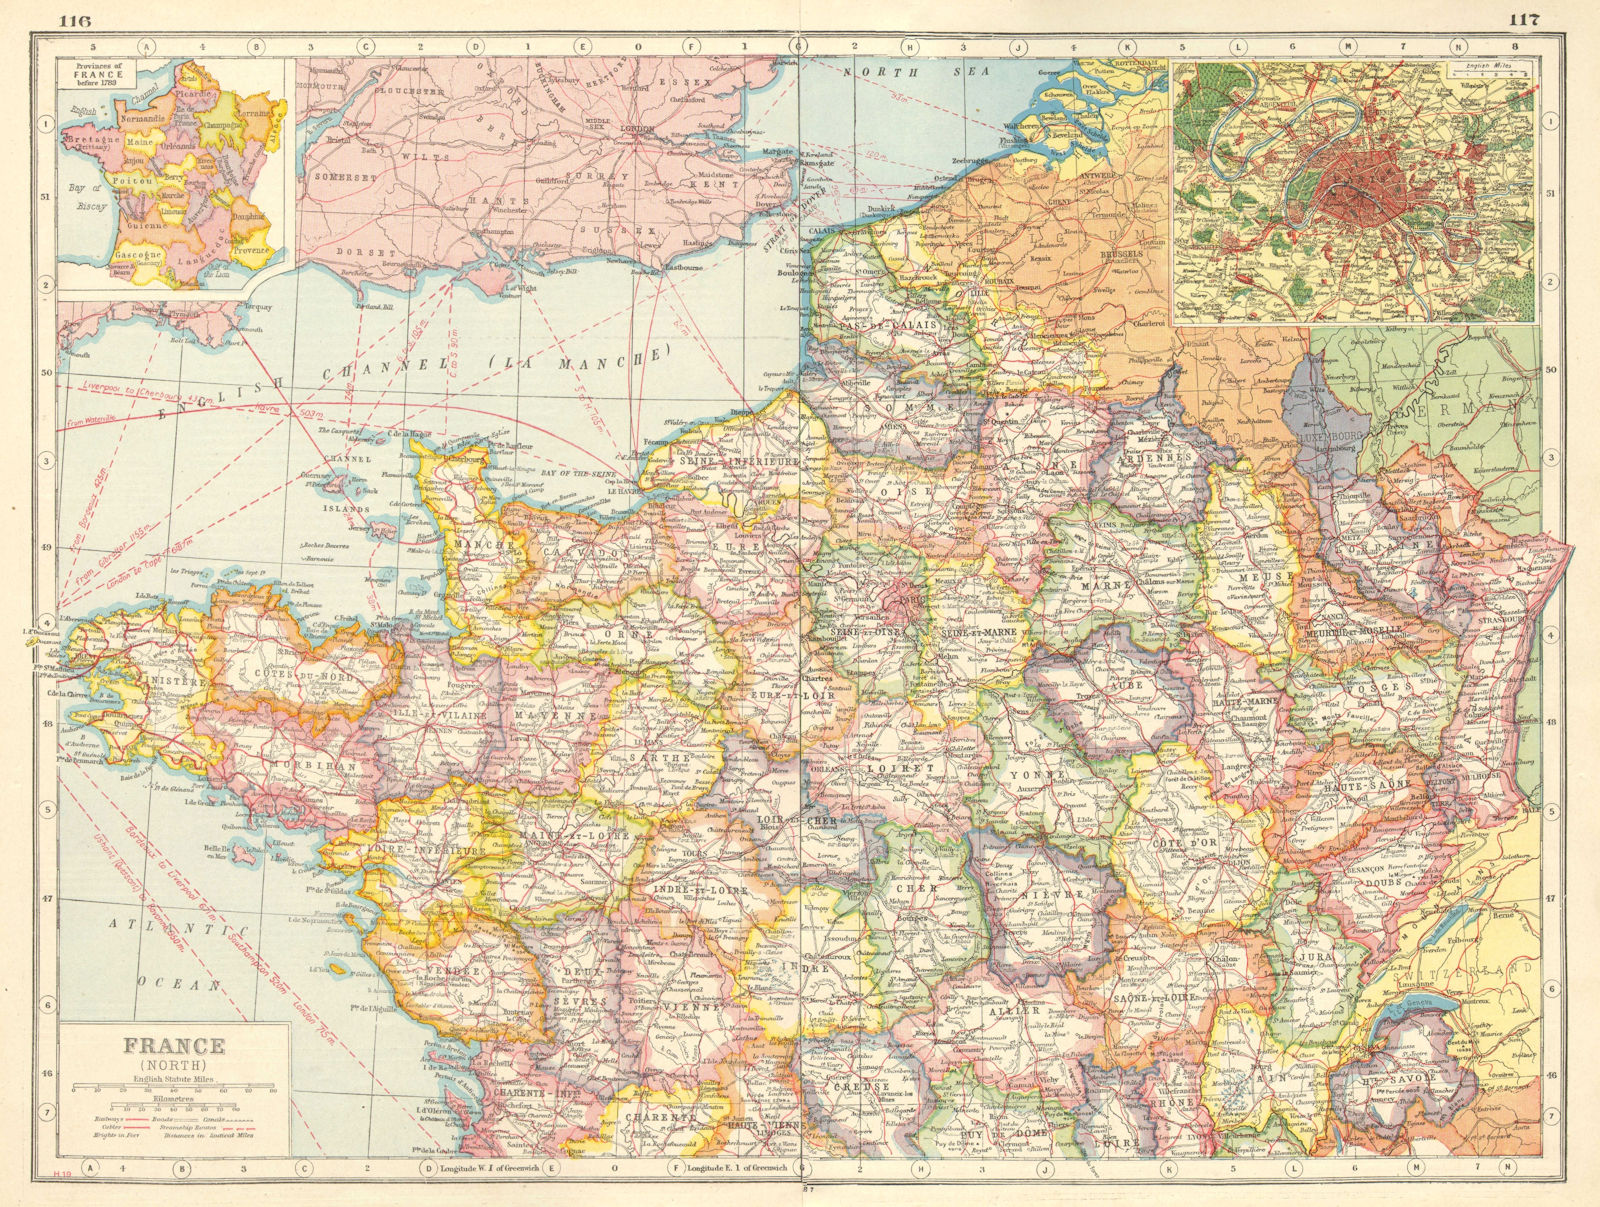 NORTHERN FRANCE. Departements. Inset Provinces pre-1789 & Paris plan 1920 map